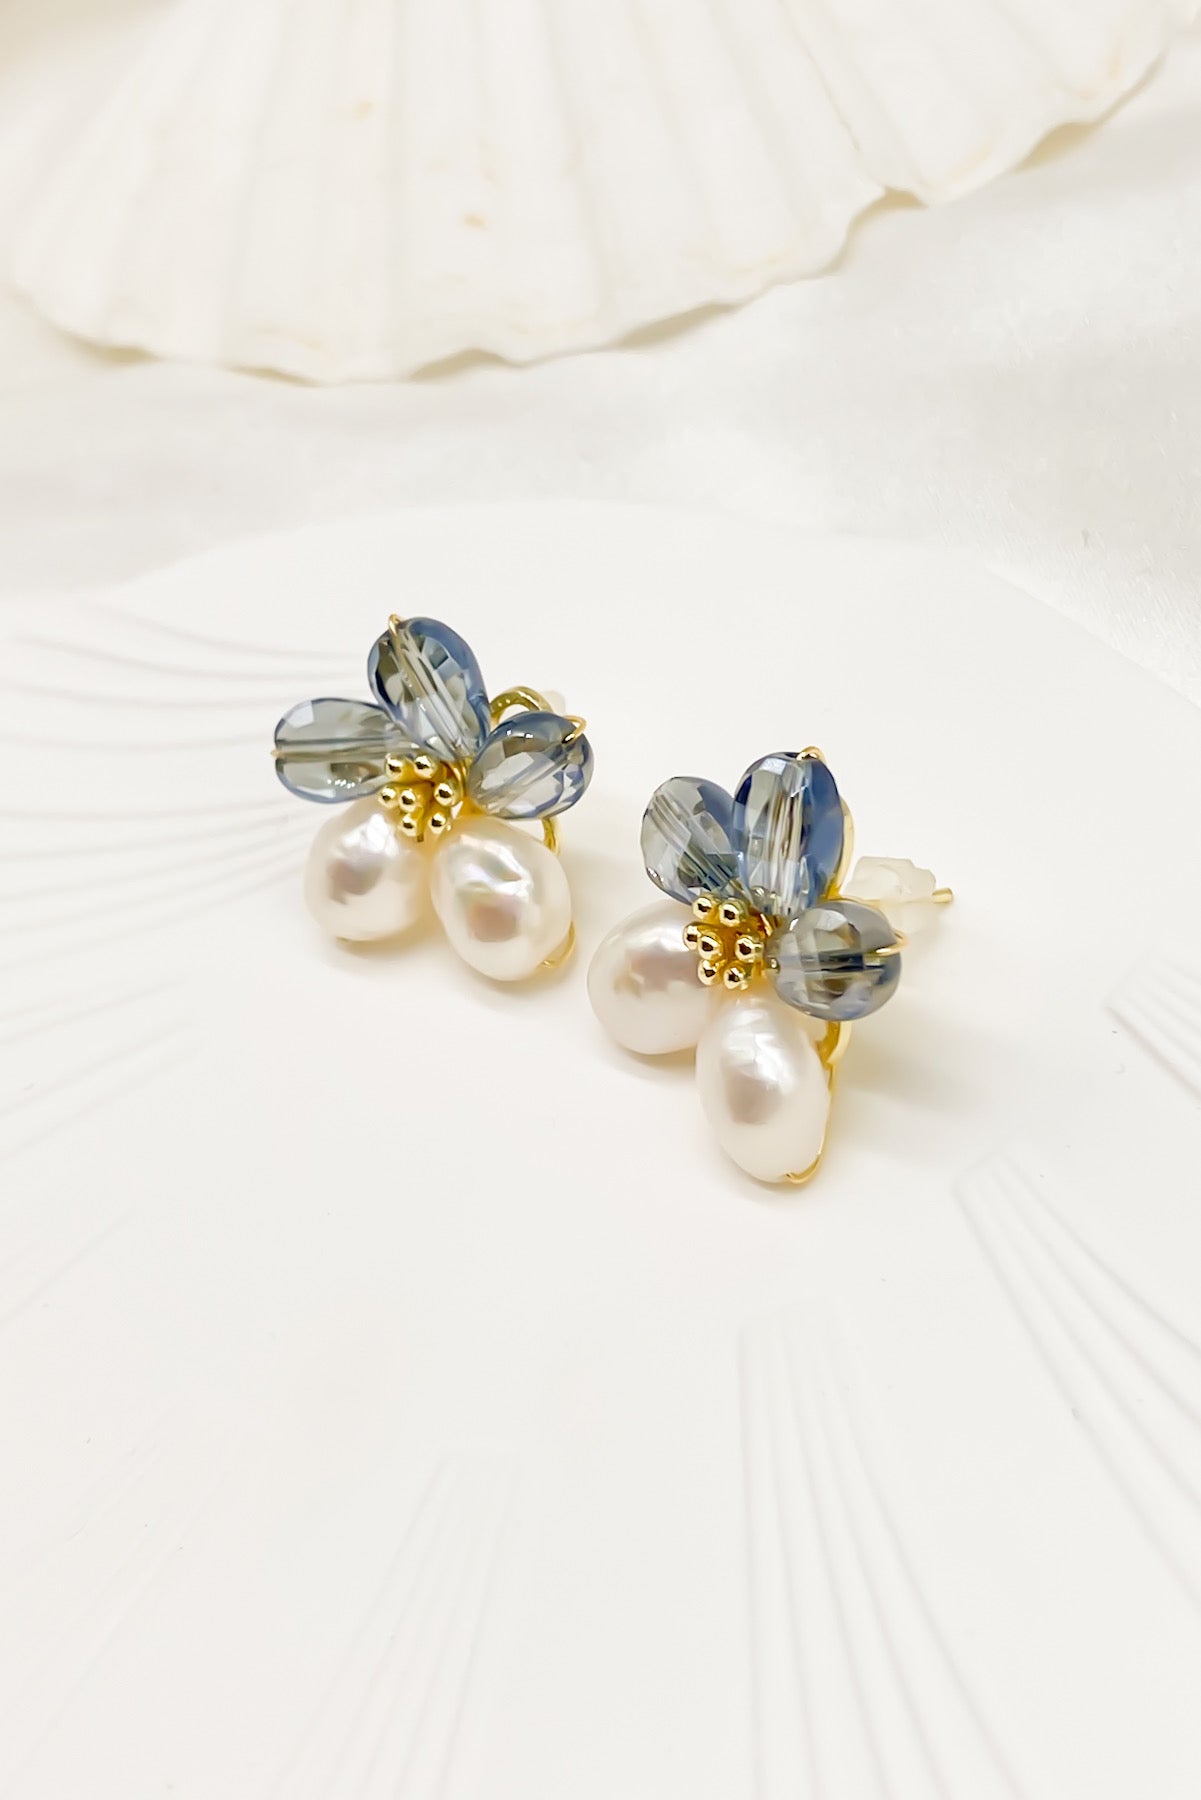 SKYE Shop Chic Modern Elegant Classy Women Jewelry French Parisian Minimalist Kira Cystal Flower Freshwater Pearl Earrings 6